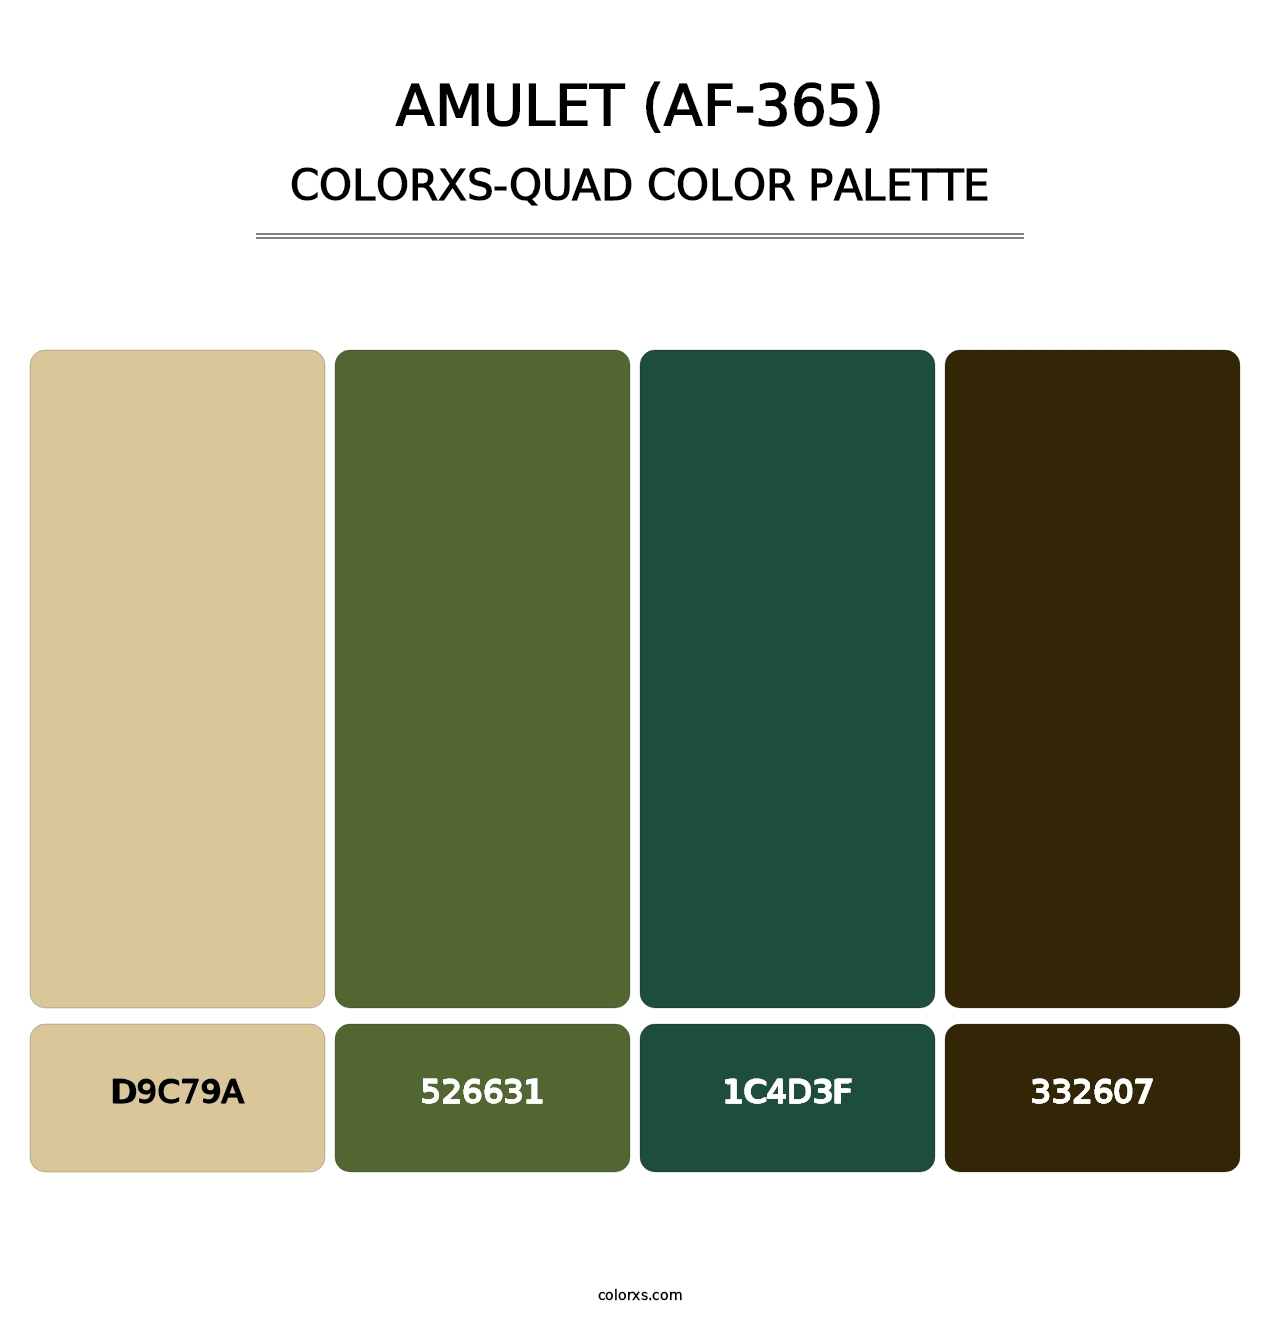 Amulet (AF-365) - Colorxs Quad Palette